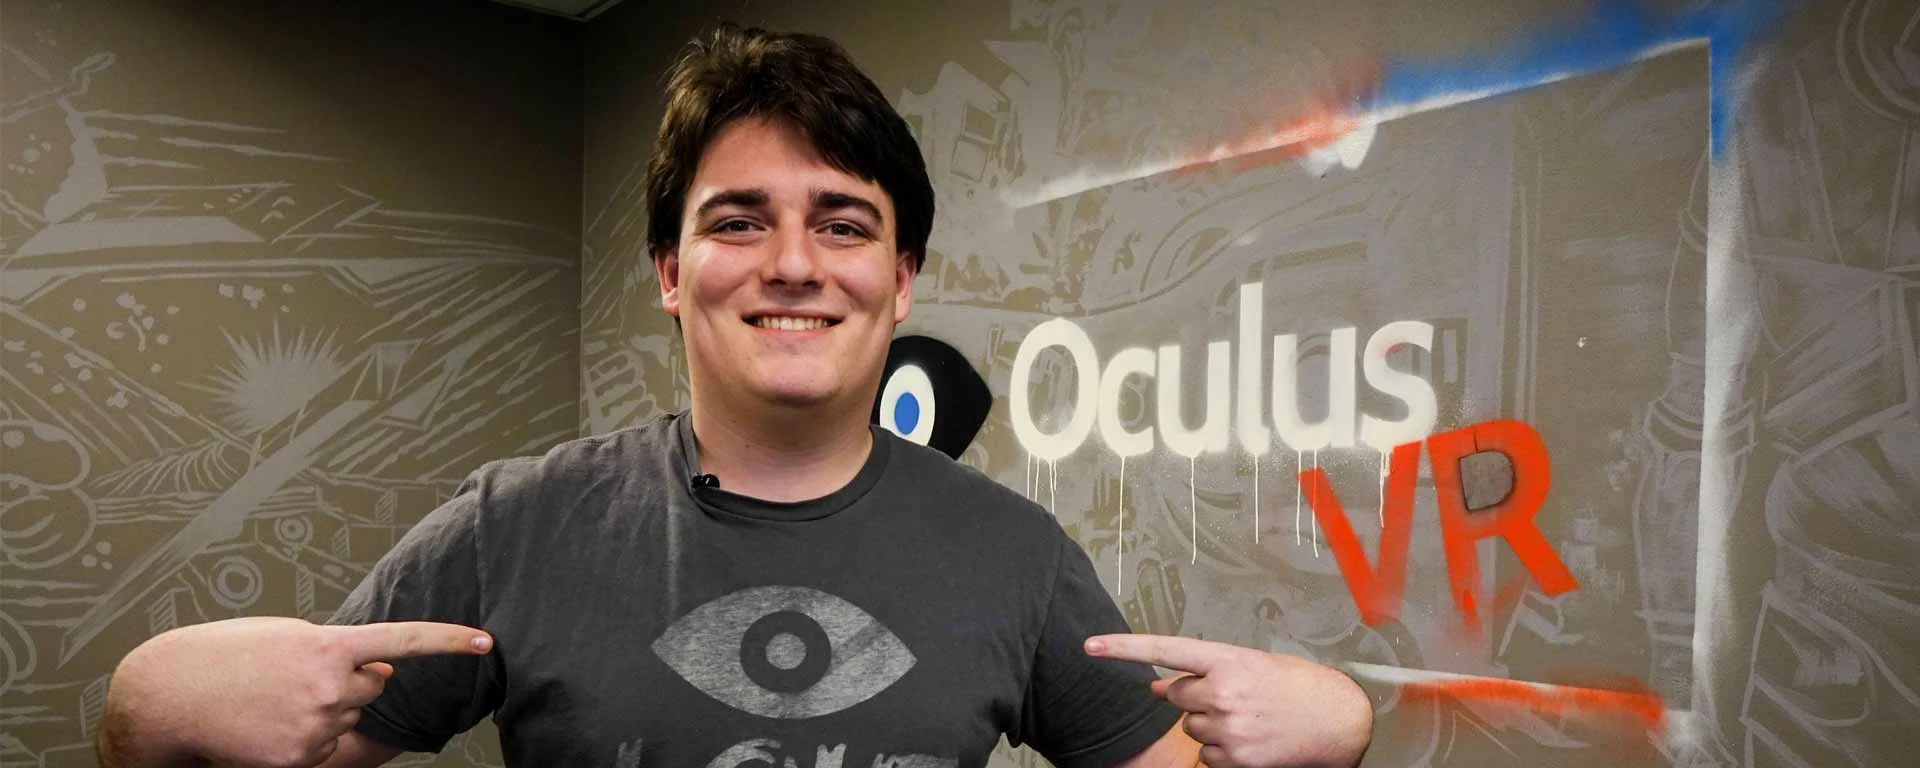 Создателя Oculus Rift Палмера Лаки будут судить — но не за все - фото 1